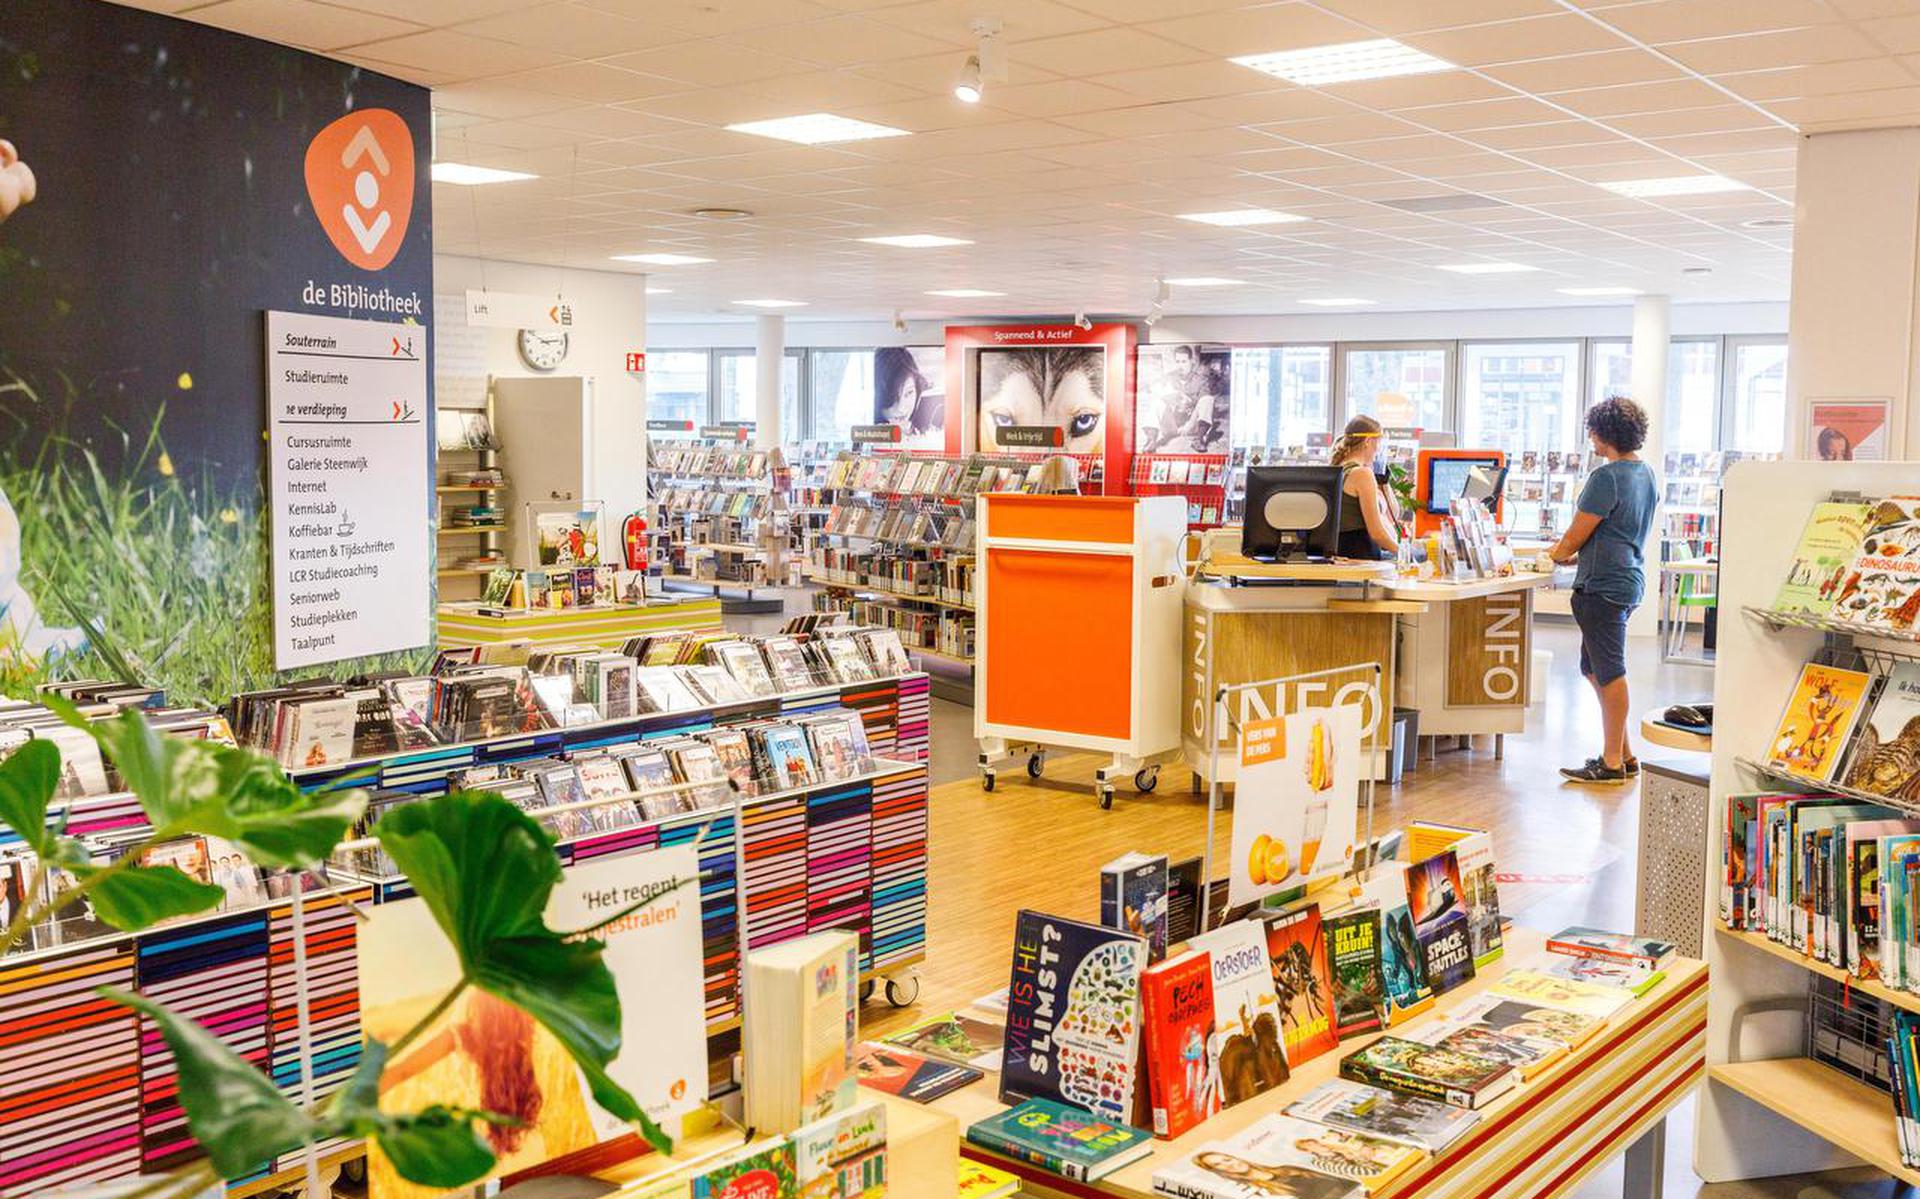 De bibliotheek in Steenwijk is dinsdag 9 mei voor het laatst open. 